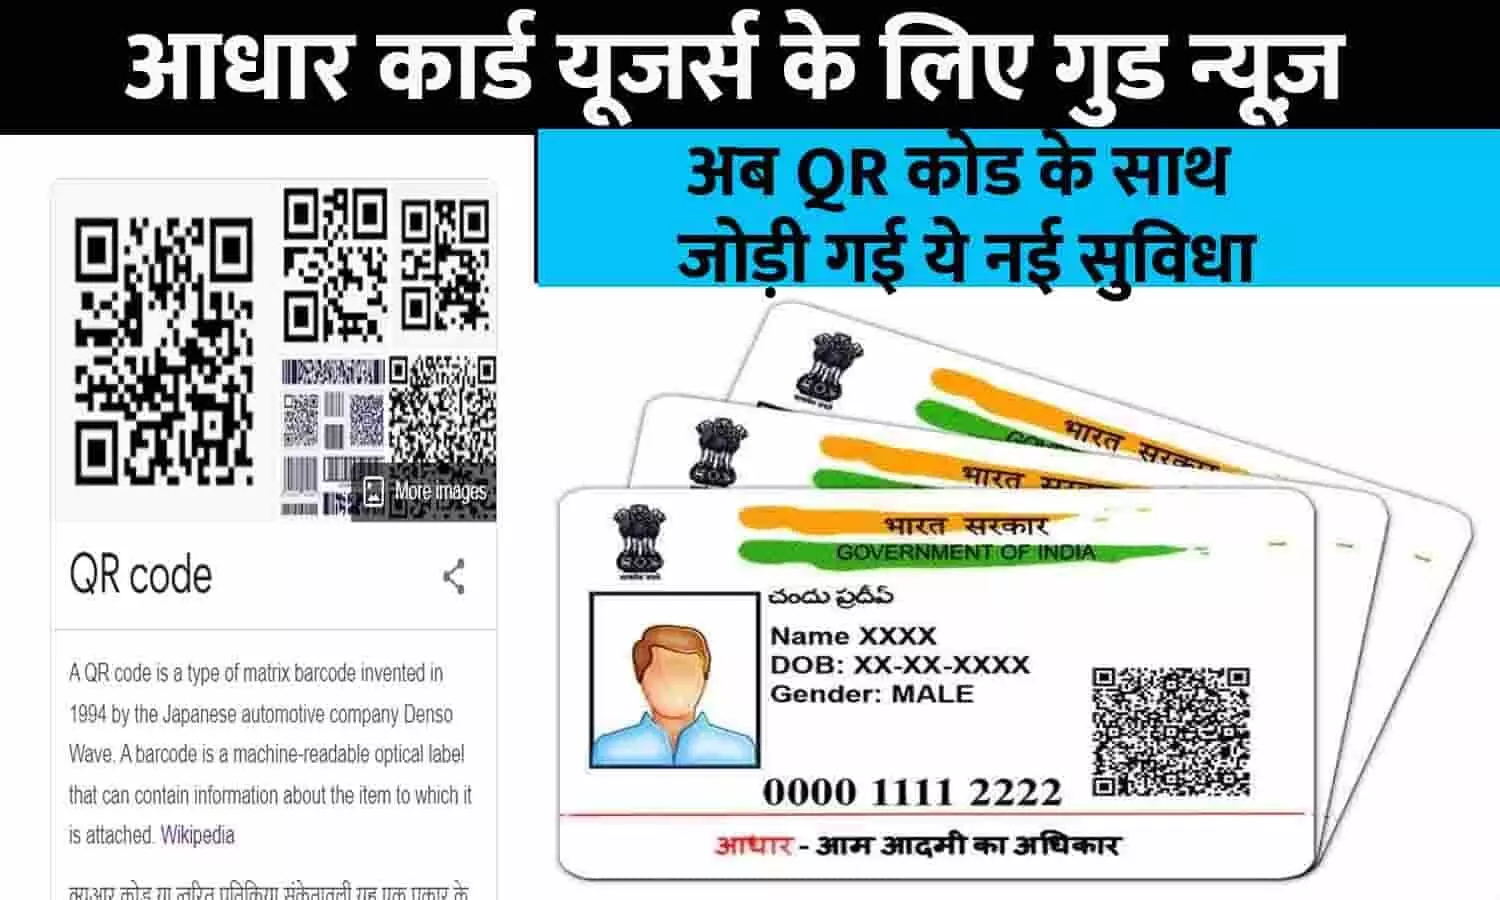 Aadhaar Card New Feature Big Alert 2023: आधार कार्ड यूजर्स के लिए गुड न्यूज़! अब QR कोड के साथ जोड़ी गई ये नई सुविधा, तुरंत ध्यान दे